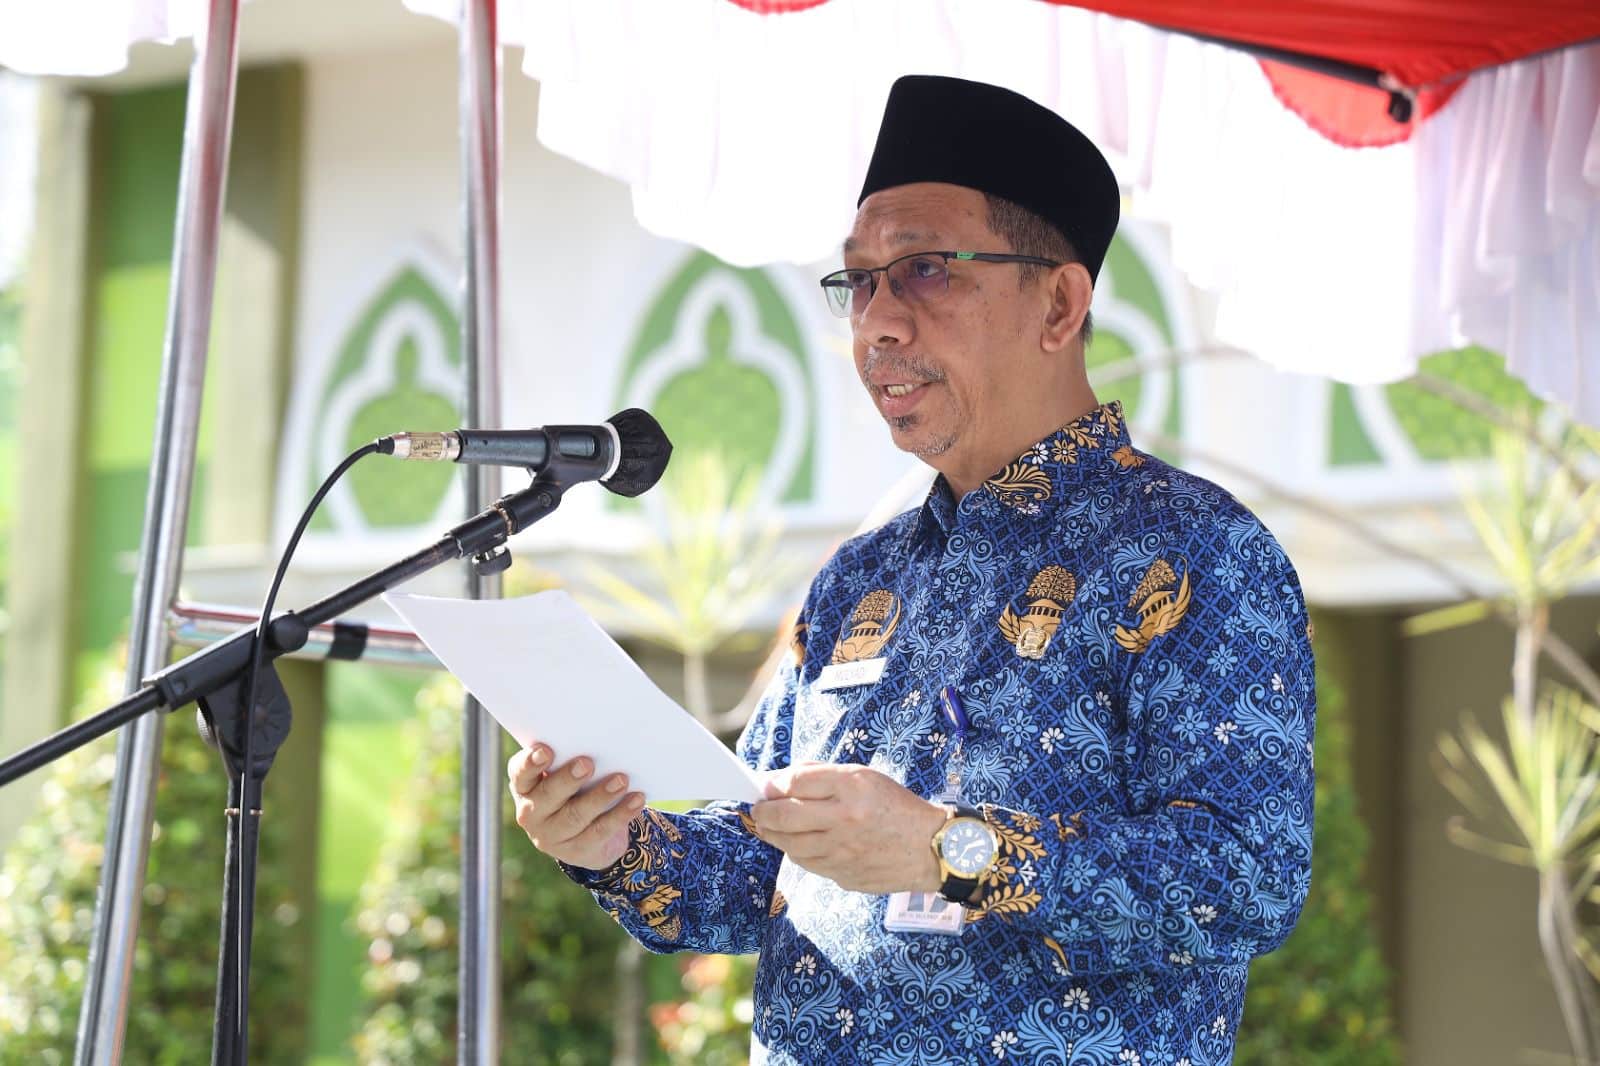 Sekretaris Daerah Kota Pontianak, Mulyadi menjadi pembina upacara peringatan Hari Pahlawan di lingkup Pemerintah Kota Pontianak. (Foto: Kominfo/Prokopim Pontianak)